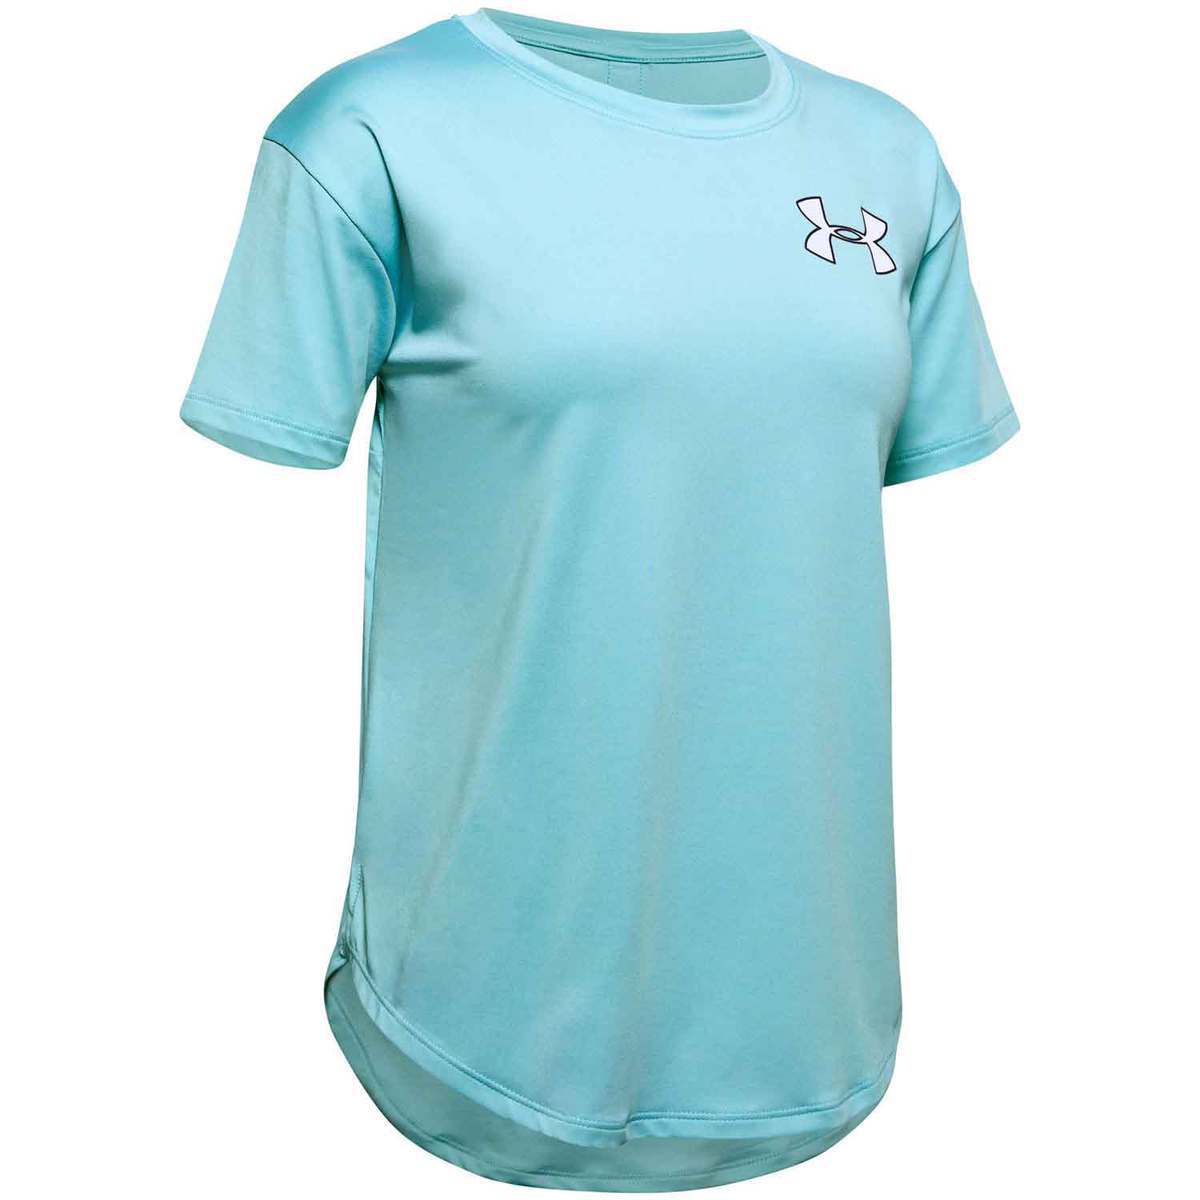 Under Armour Girls' HeatGear Short Sleeve Shirt | Sportsman's Warehouse